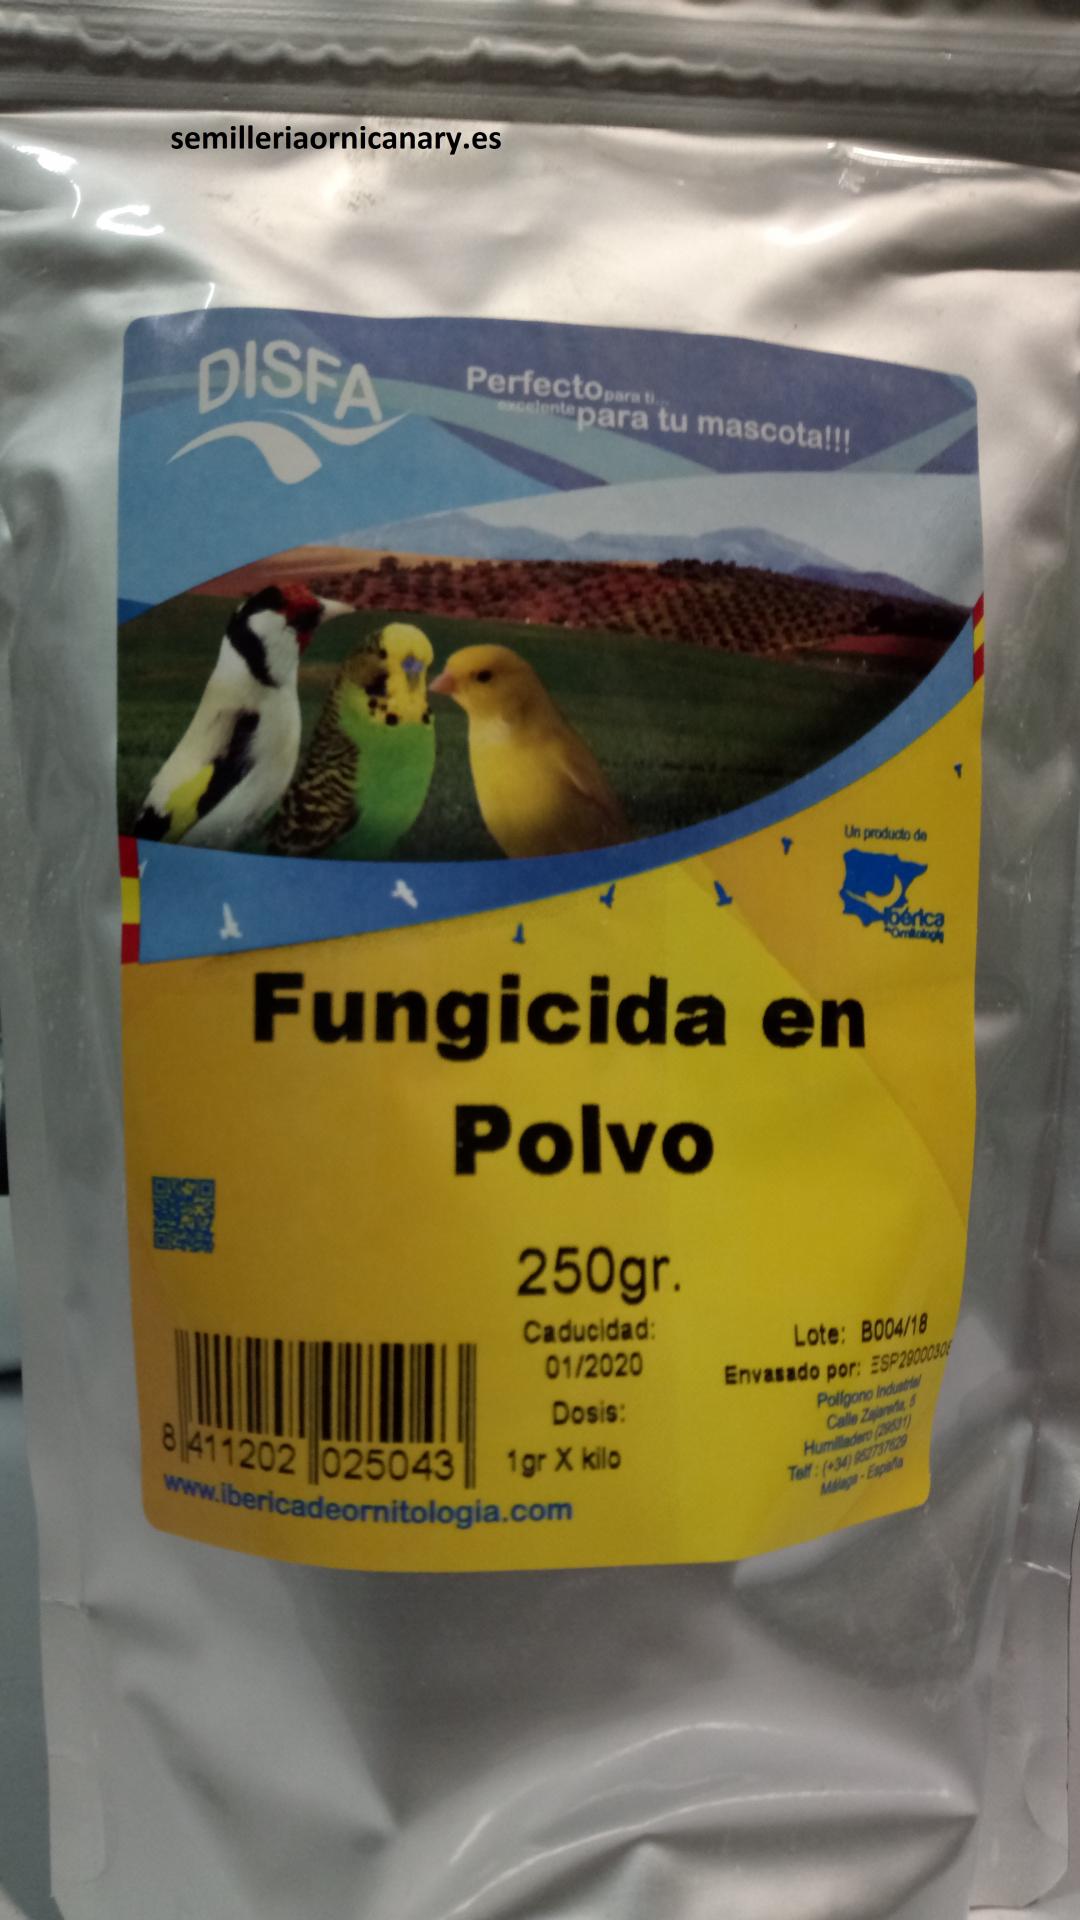 Fungicida en Polvo (Disfa) 250gr